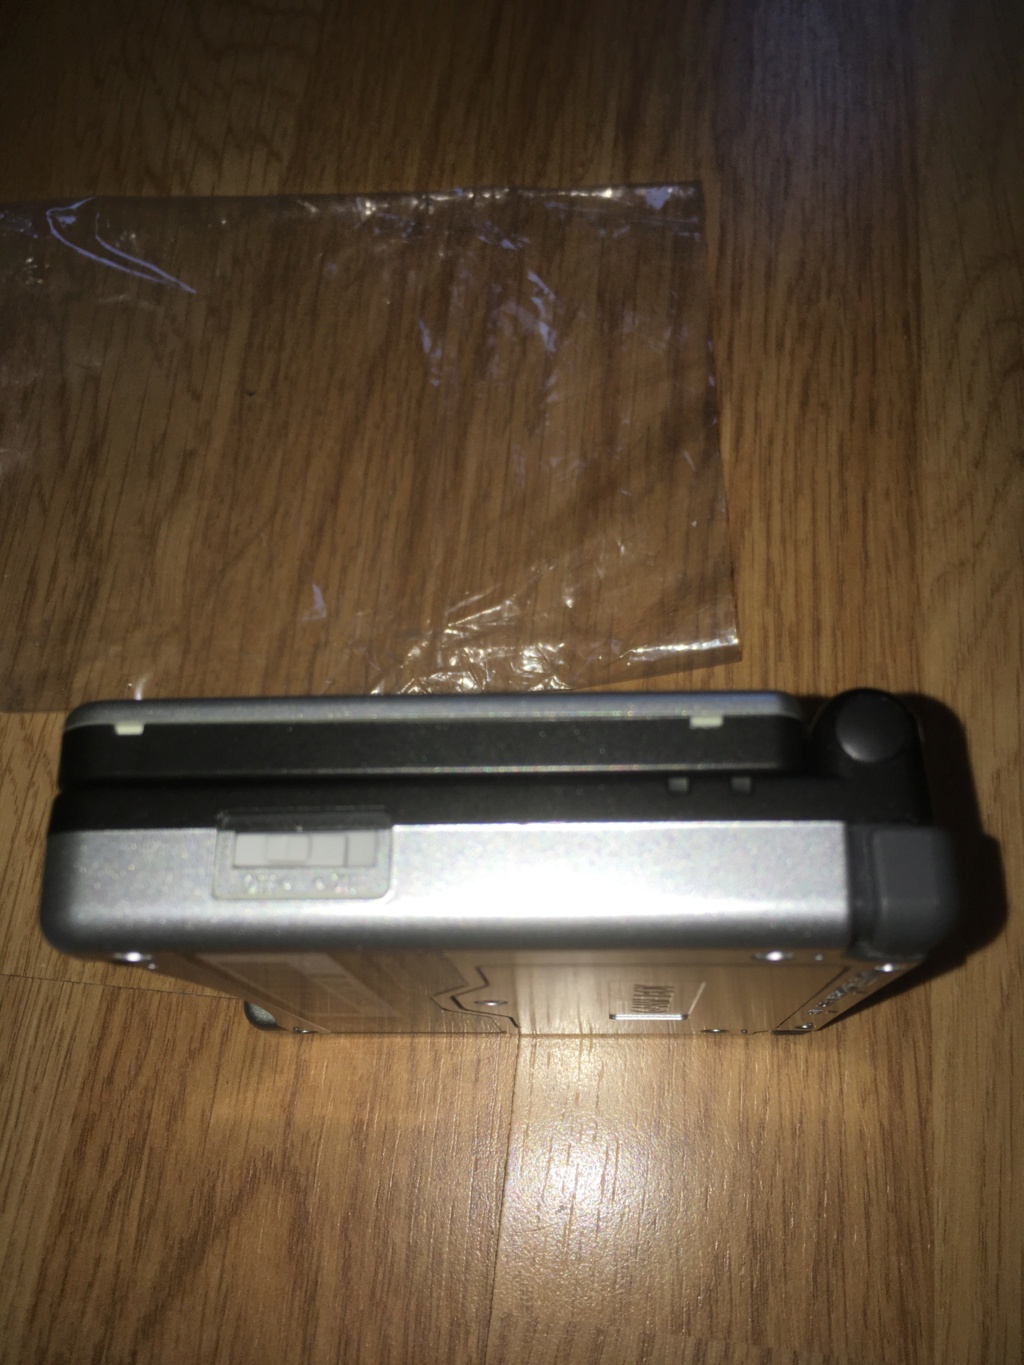 [VDS] Rarissime Game Boy Advance SP iQue Samus / Metroïd complète état neuf Img_6629